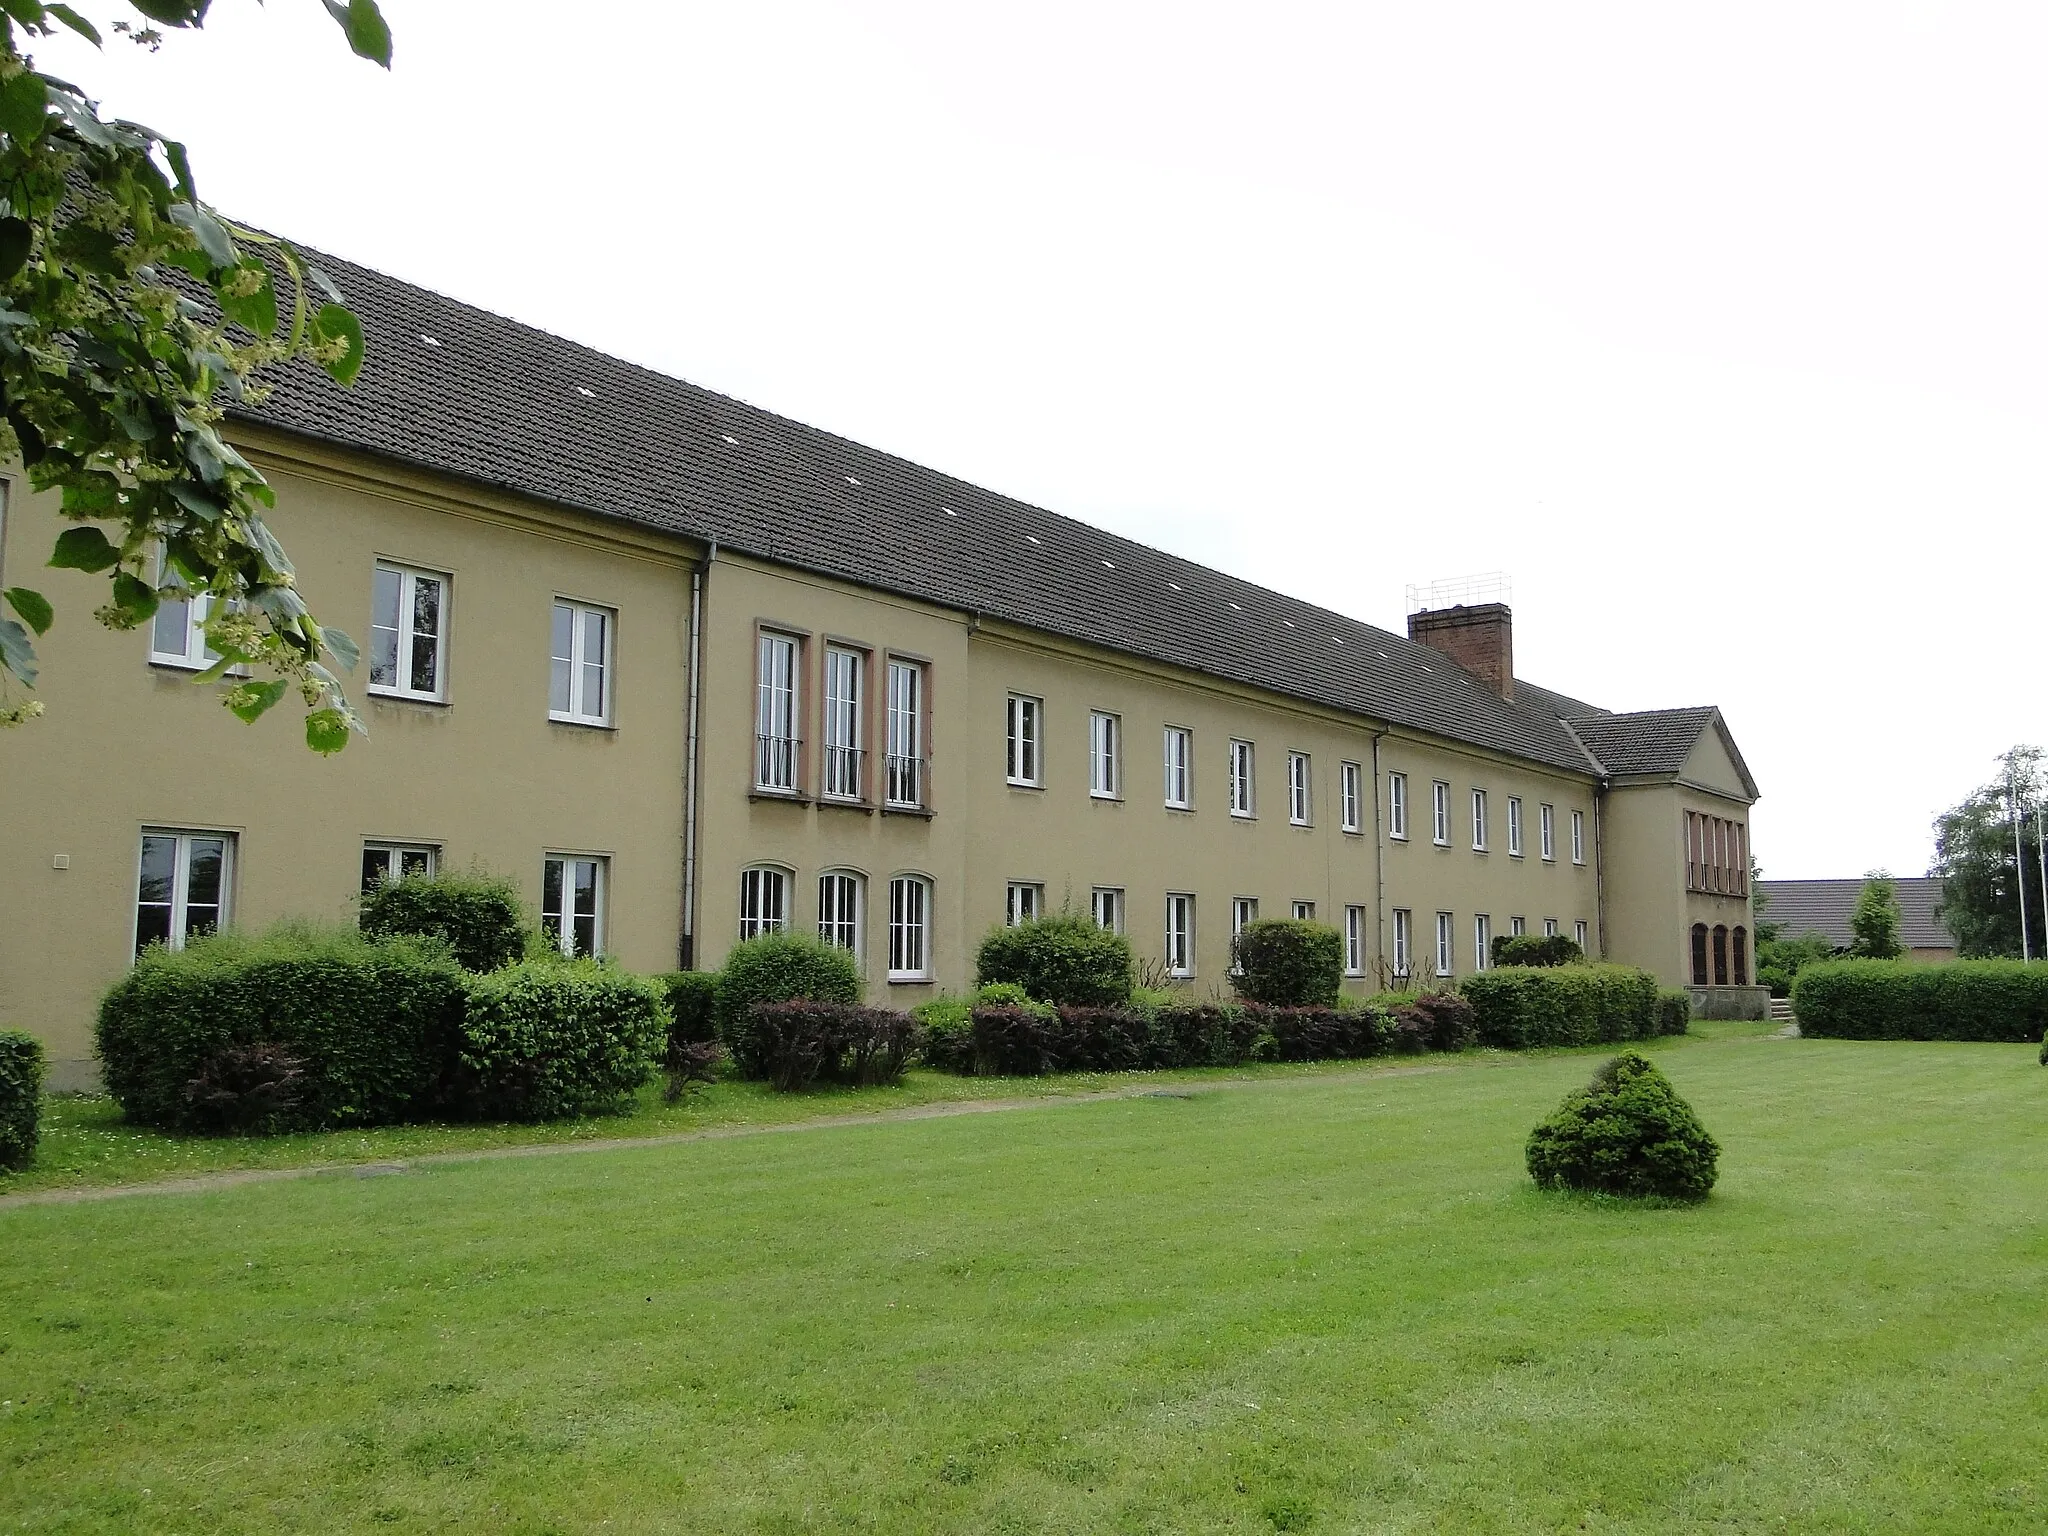 Photo showing: School in Domsühl, district Ludwigslust-Parchim, Mecklenburg-Vorpommern, Germany